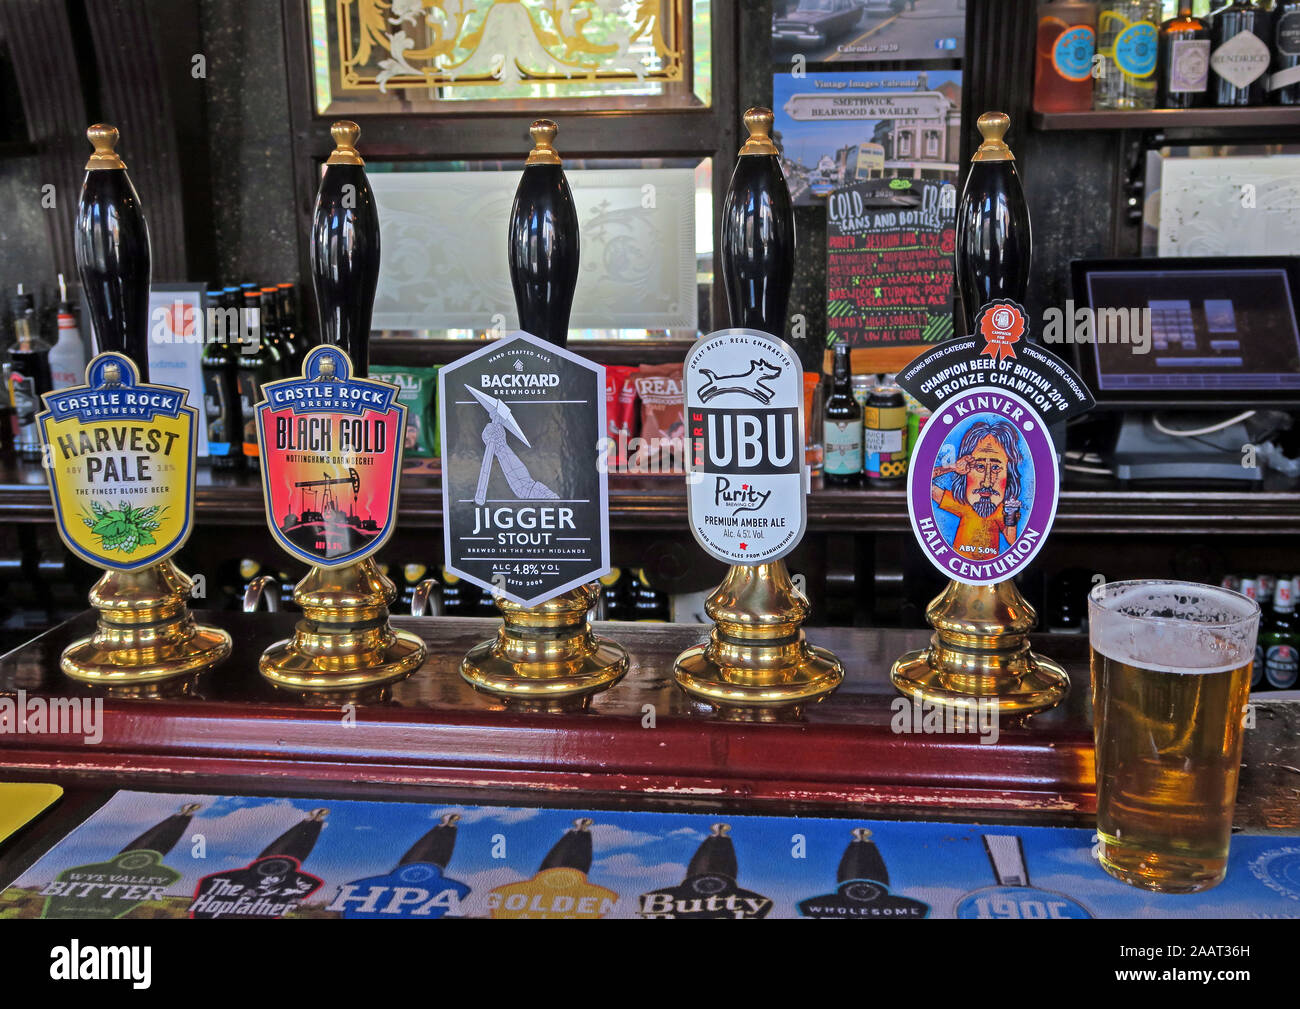 Bières de Castle Rock, Backyard, Kinver, au Woodman Real Ale Pub bar, New Canal St, Birmingham, West Midlands, Angleterre, ROYAUME-UNI, B5 5LG Banque D'Images